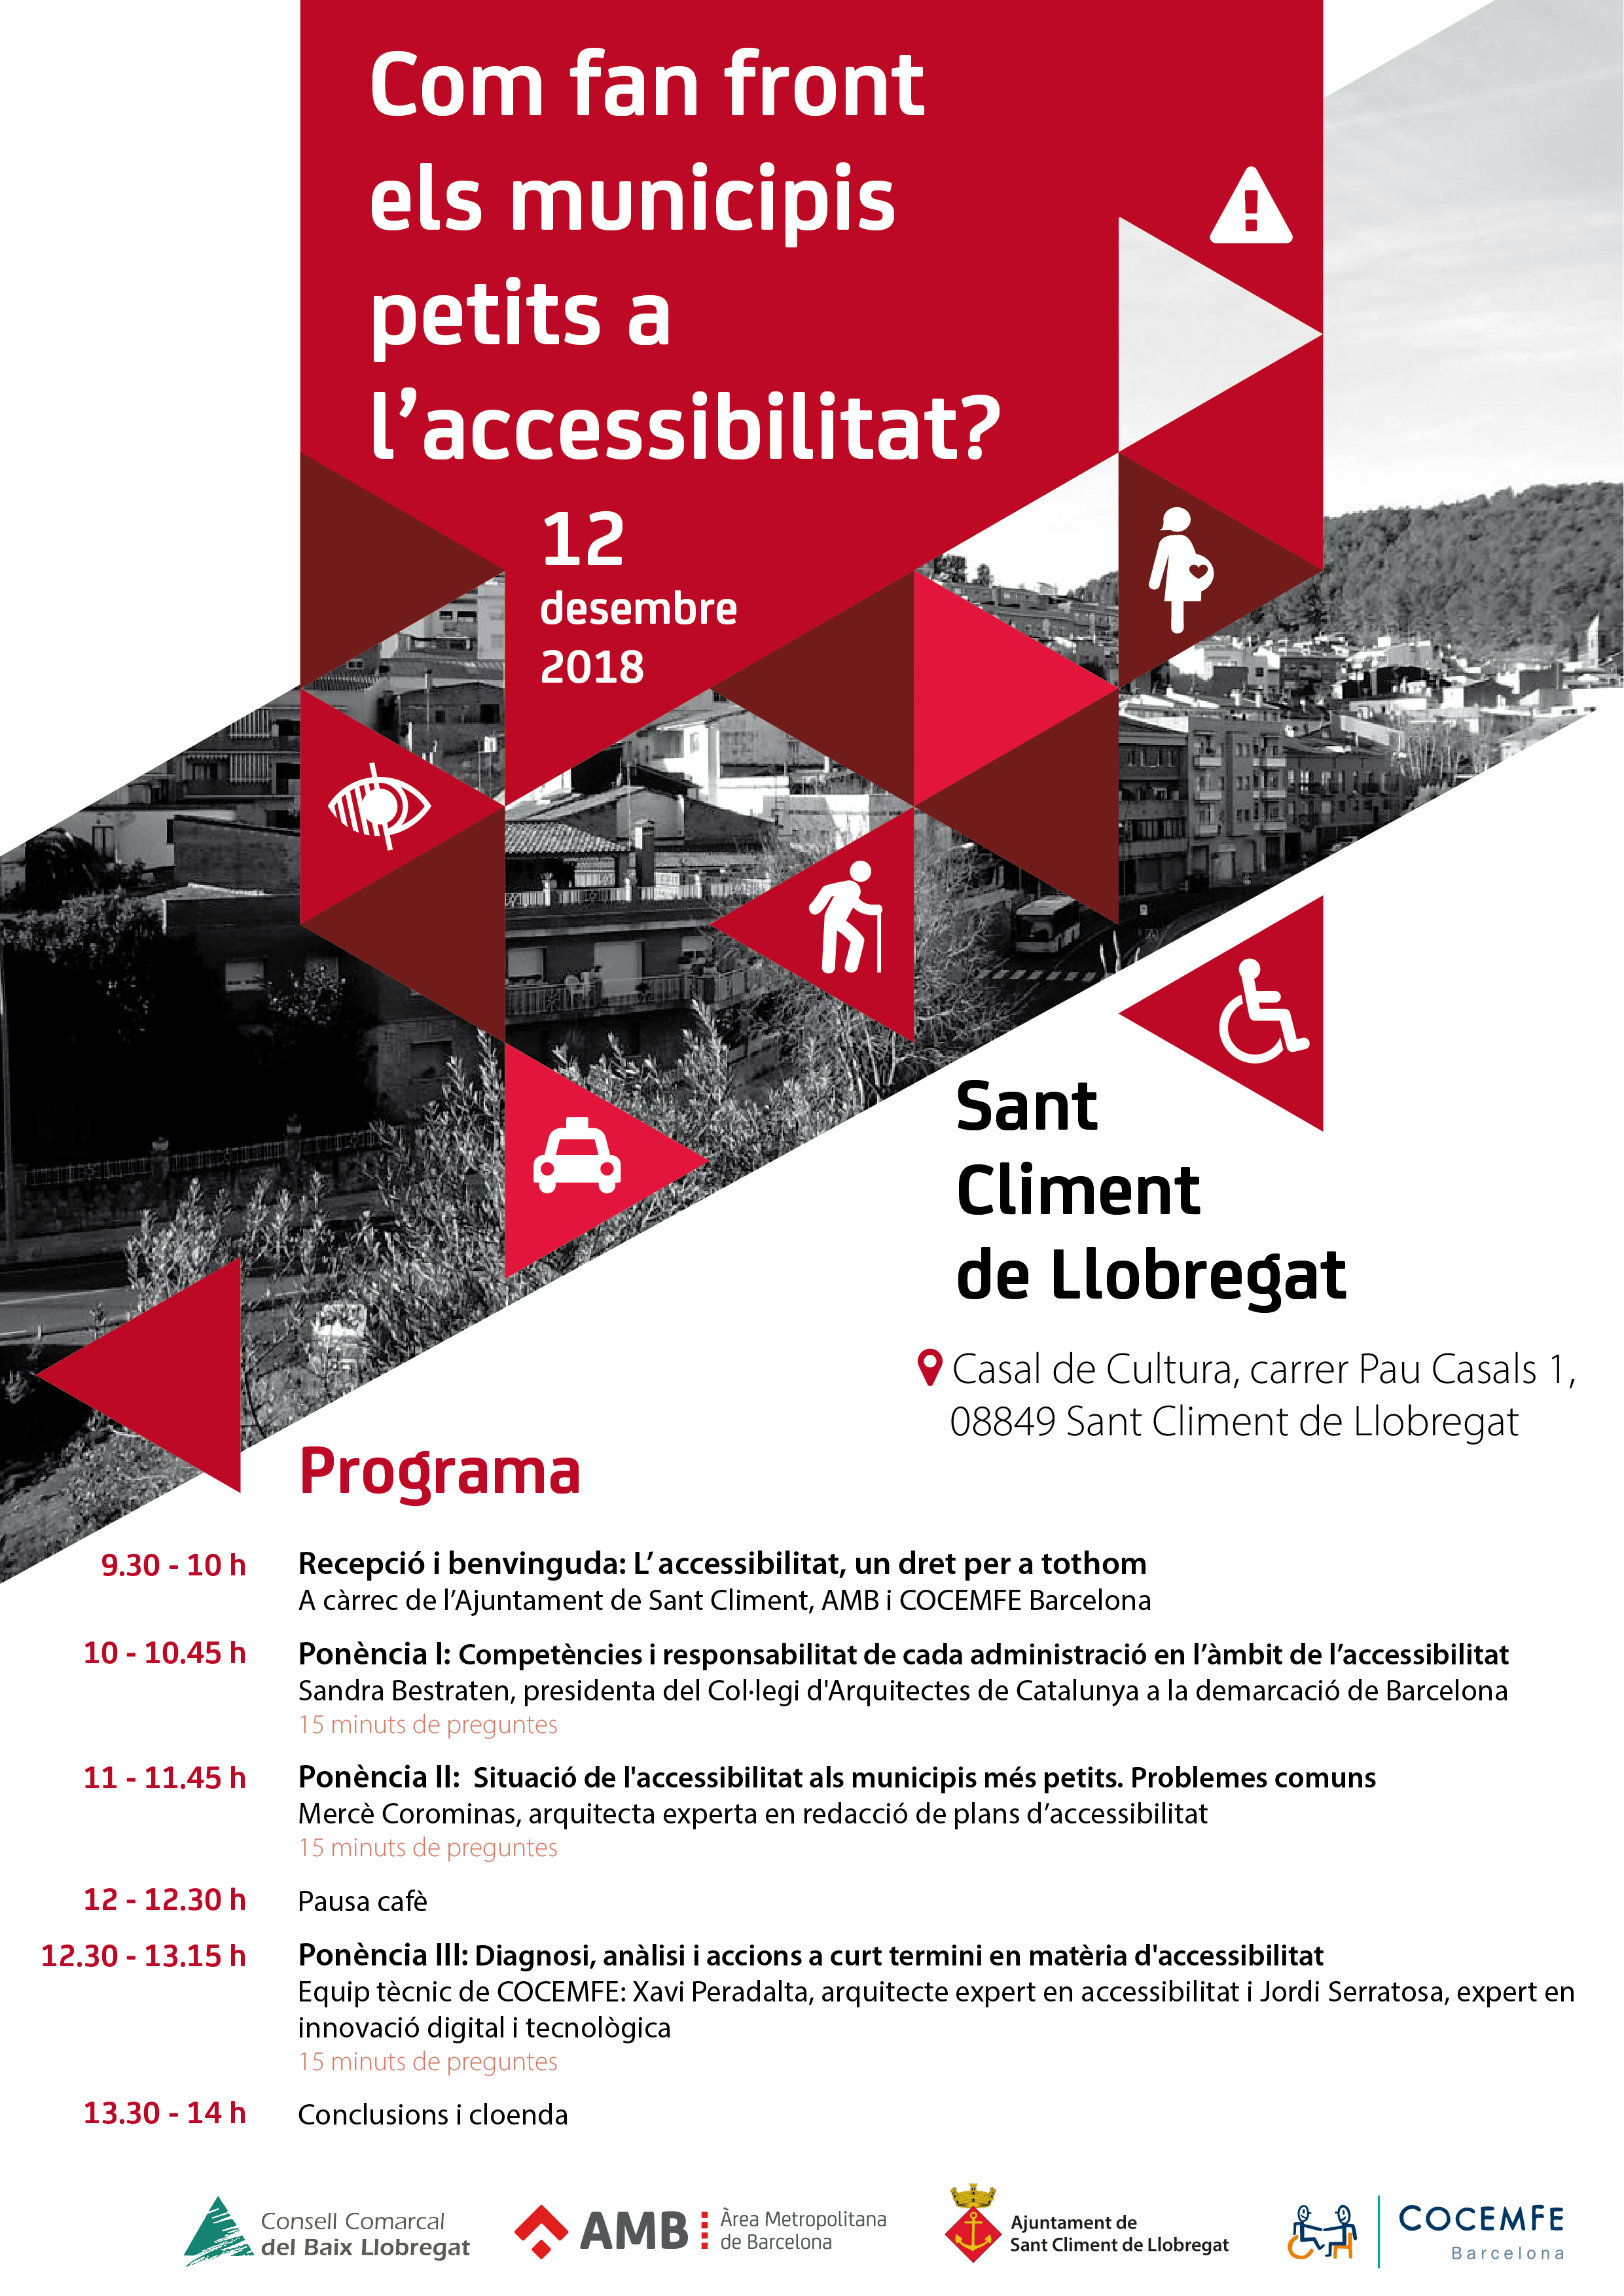  “Com fan front els municipis petits a l’accessibilitat?”, jornada per analitzar reptes i accions per impulsar l’accessibilitat universal